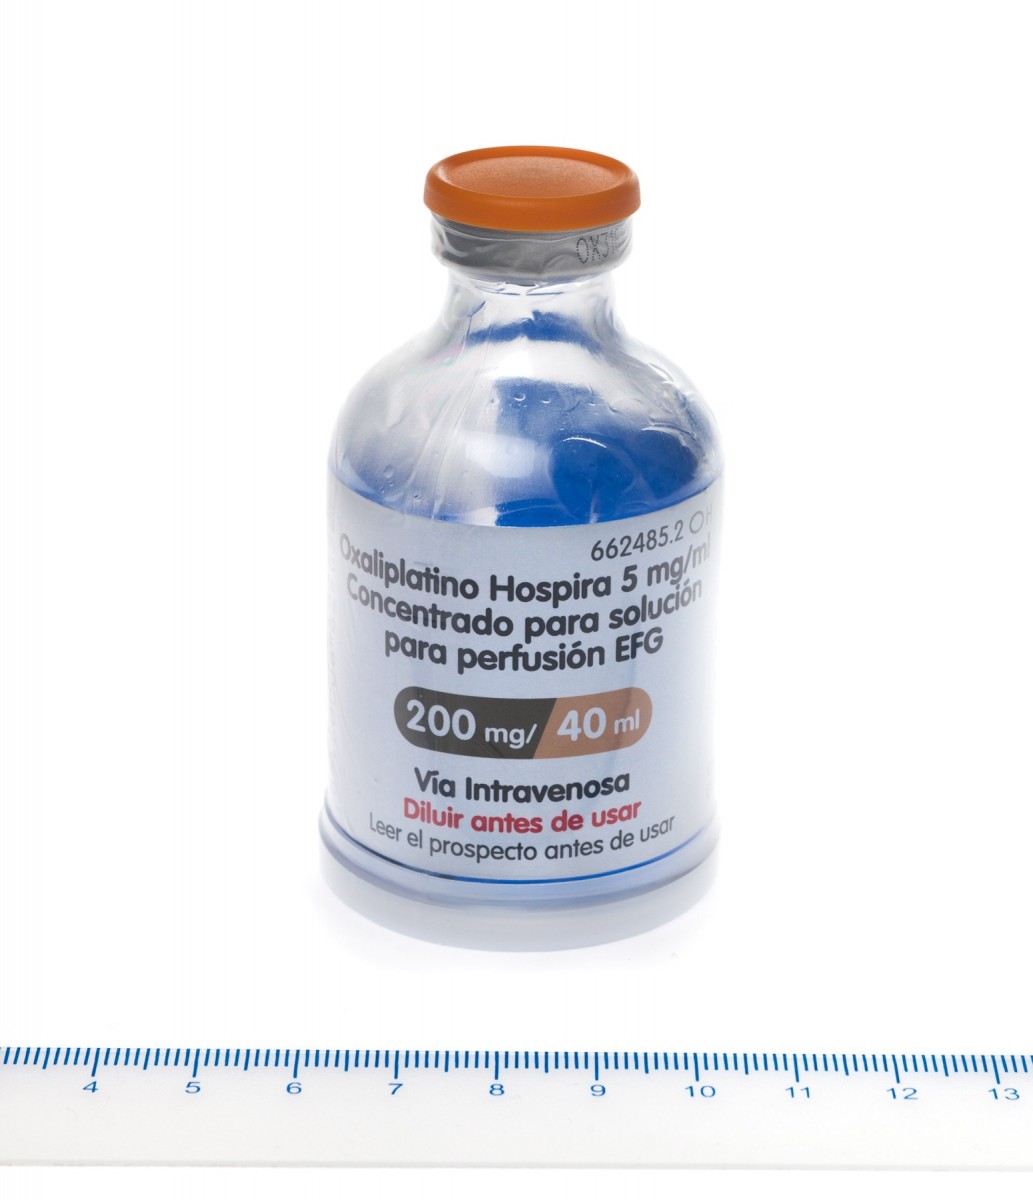 OXALIPLATINO HOSPIRA 5 mg/ml CONCENTRADO PARA SOLUCION PARA PERFUSION EFG , 1 vial de 20 ml fotografía de la forma farmacéutica.